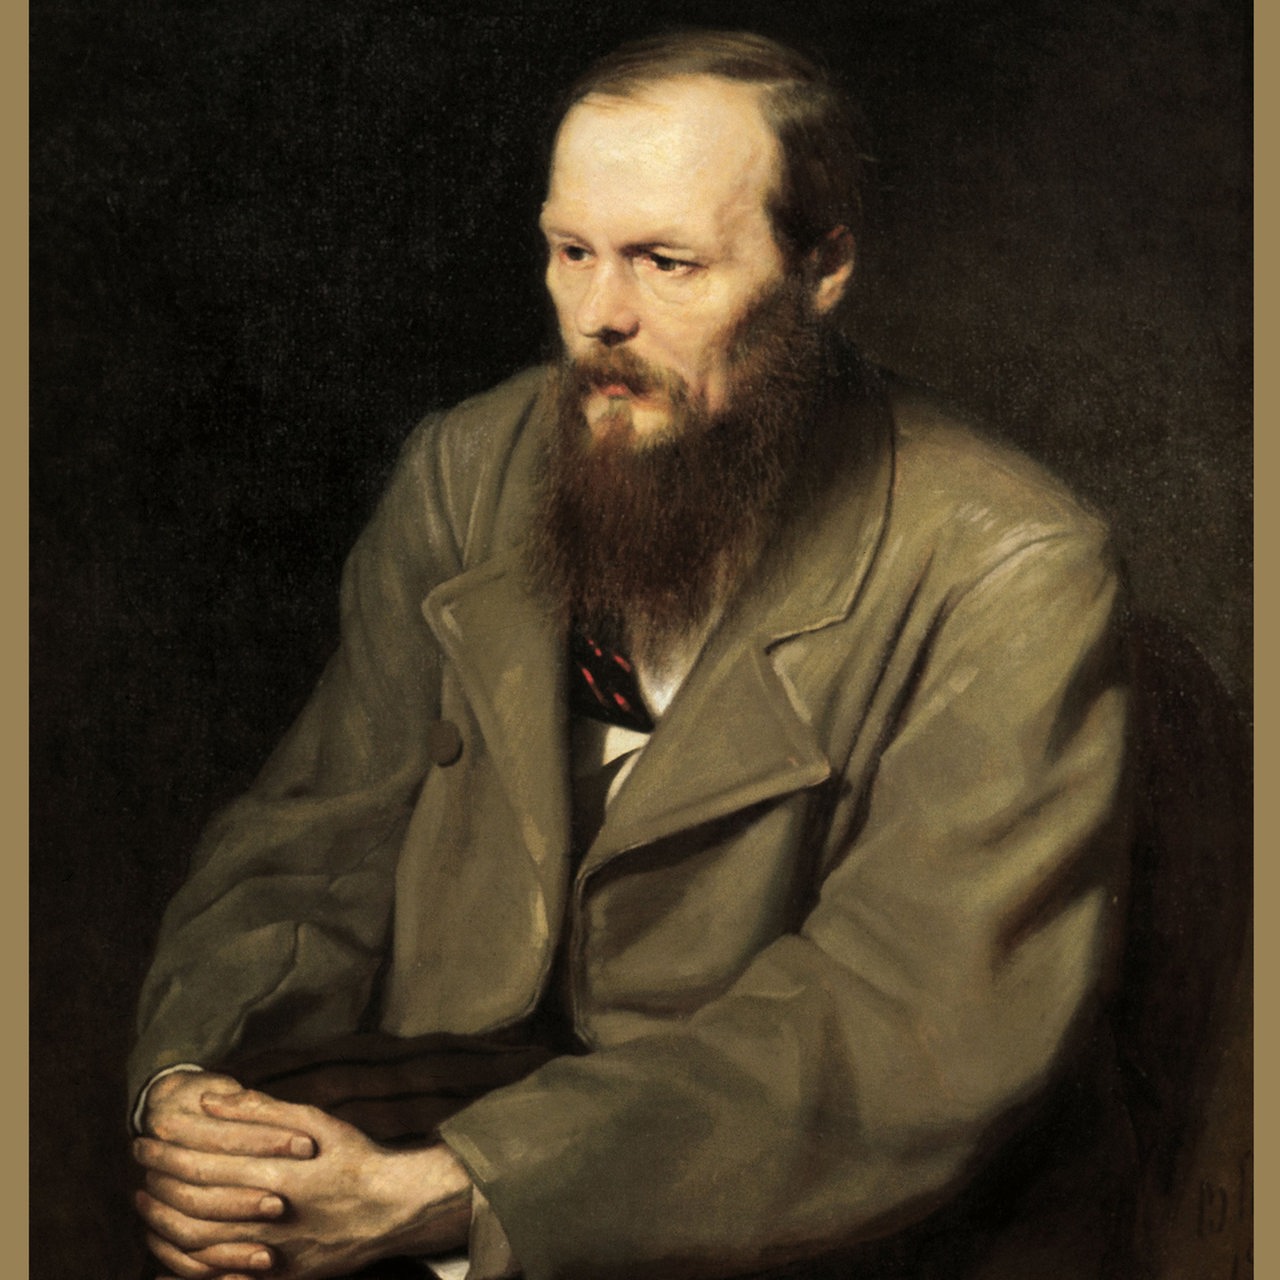 Der russische Dichter Fjodor Michailowitsch Dostojewski nach einem Porträt des Malers Perow.